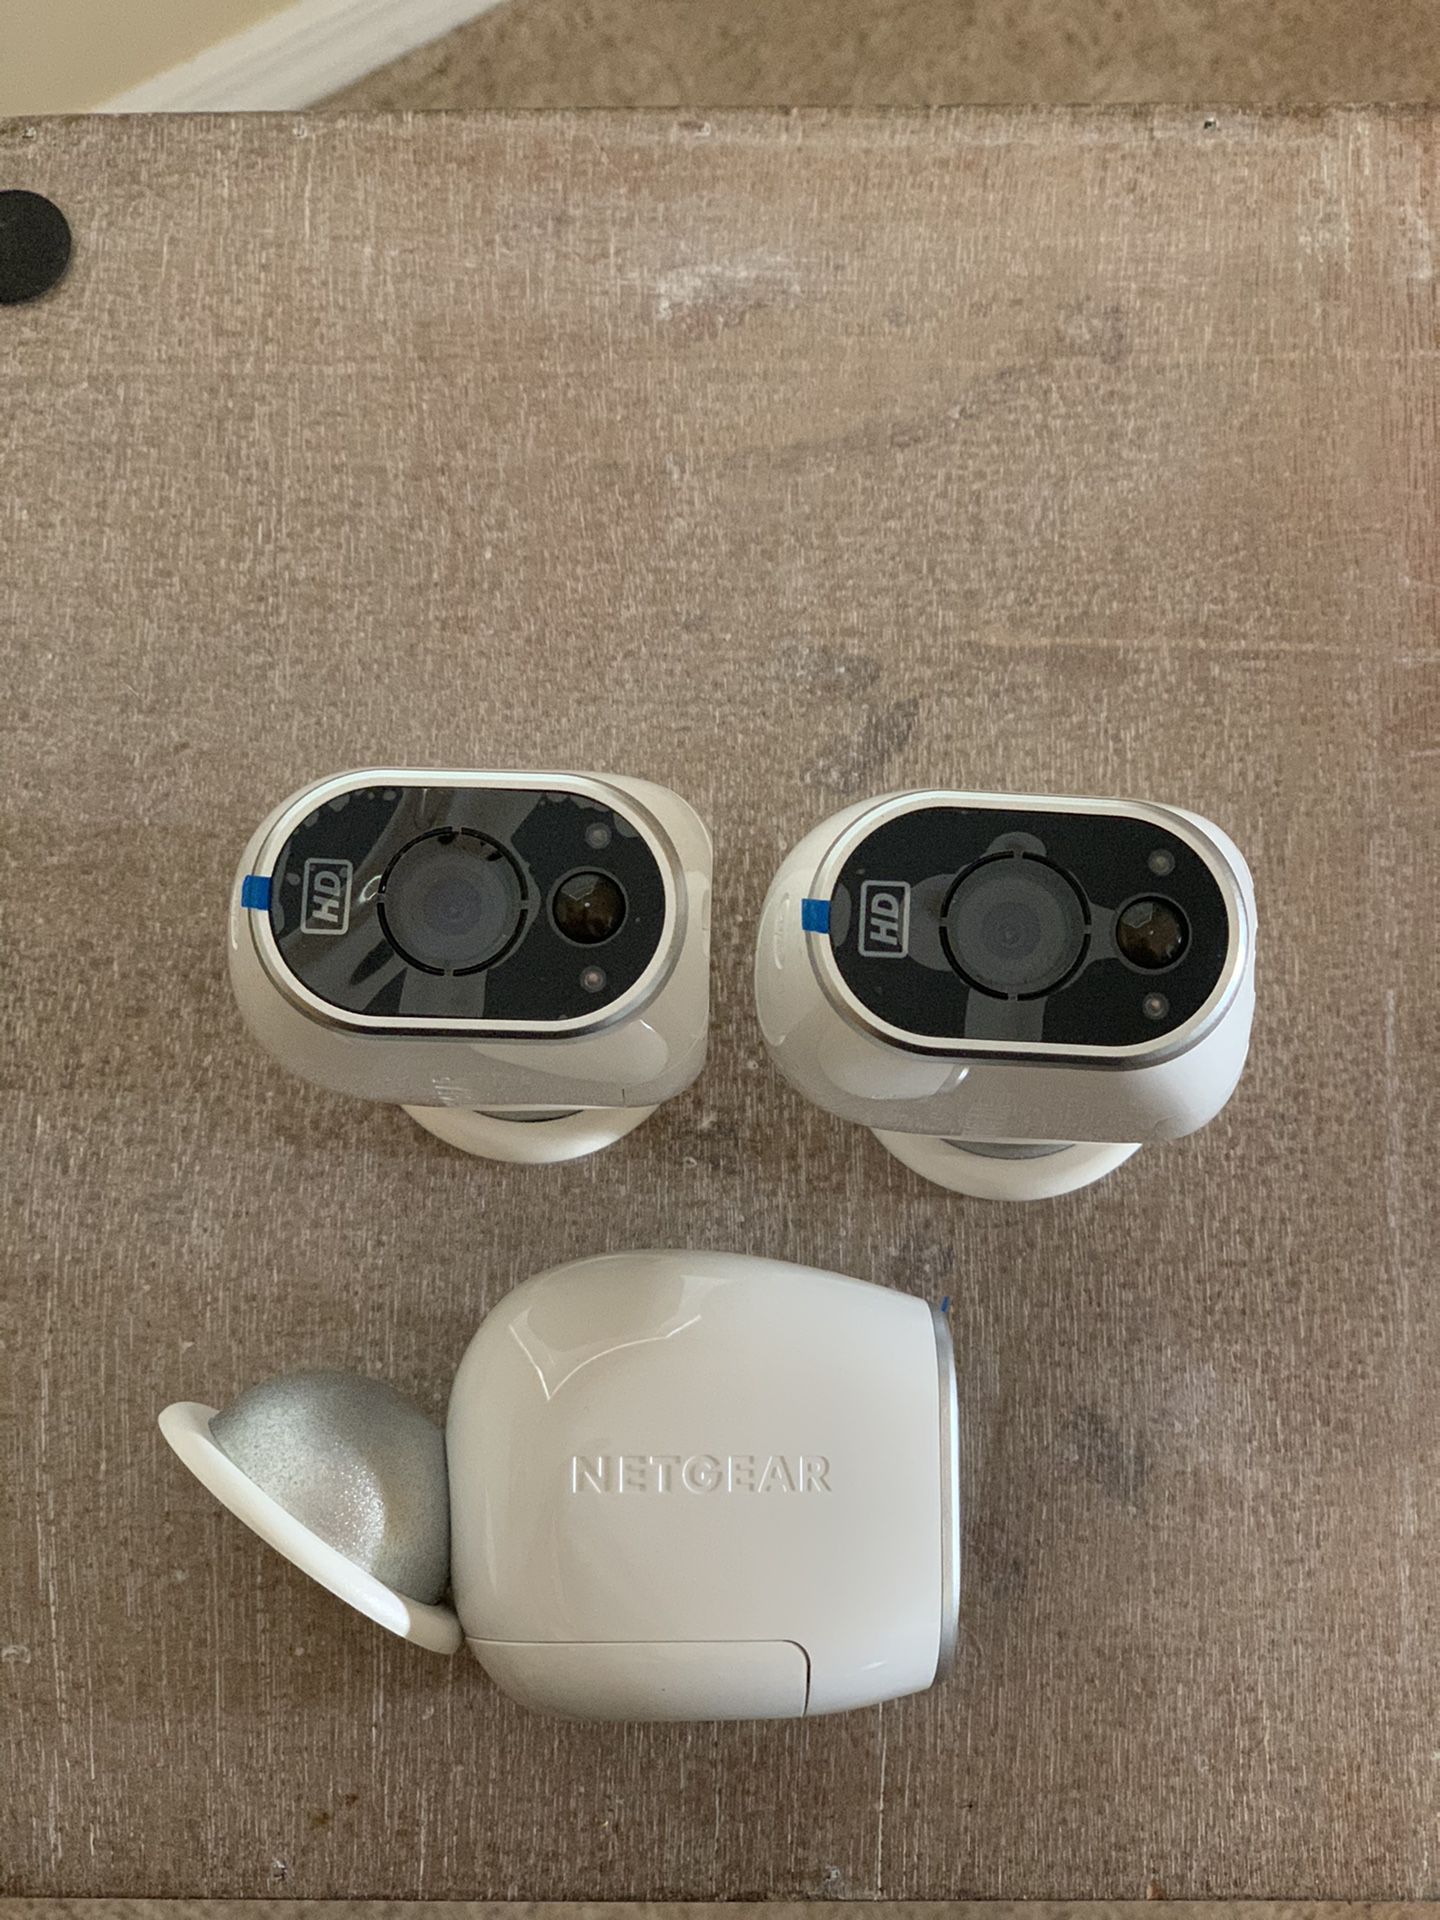 Netgear home security cameras